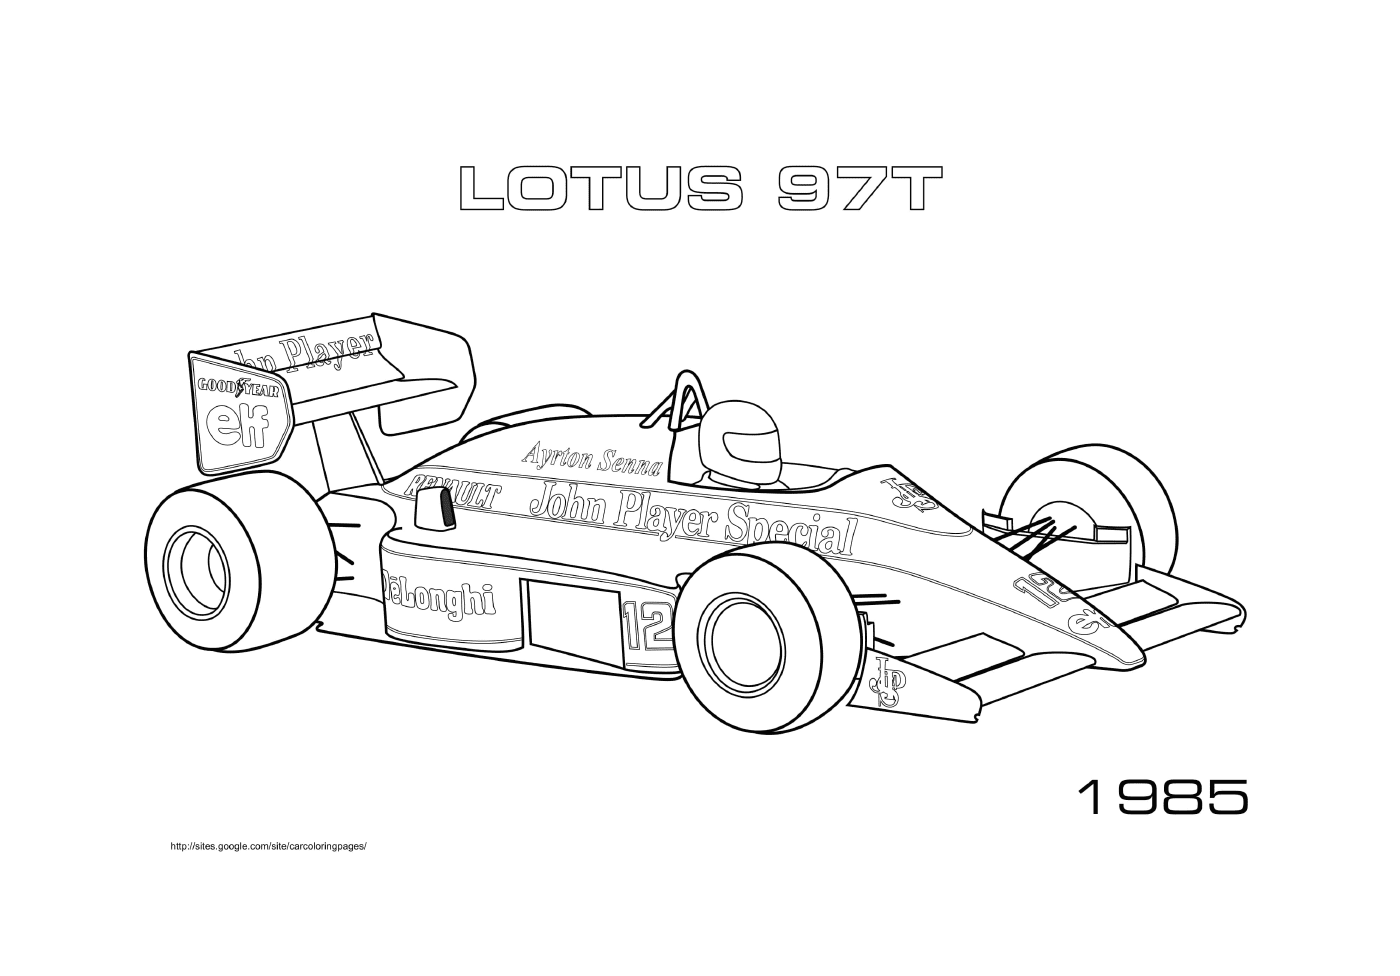  Lotus 97t of 1985 